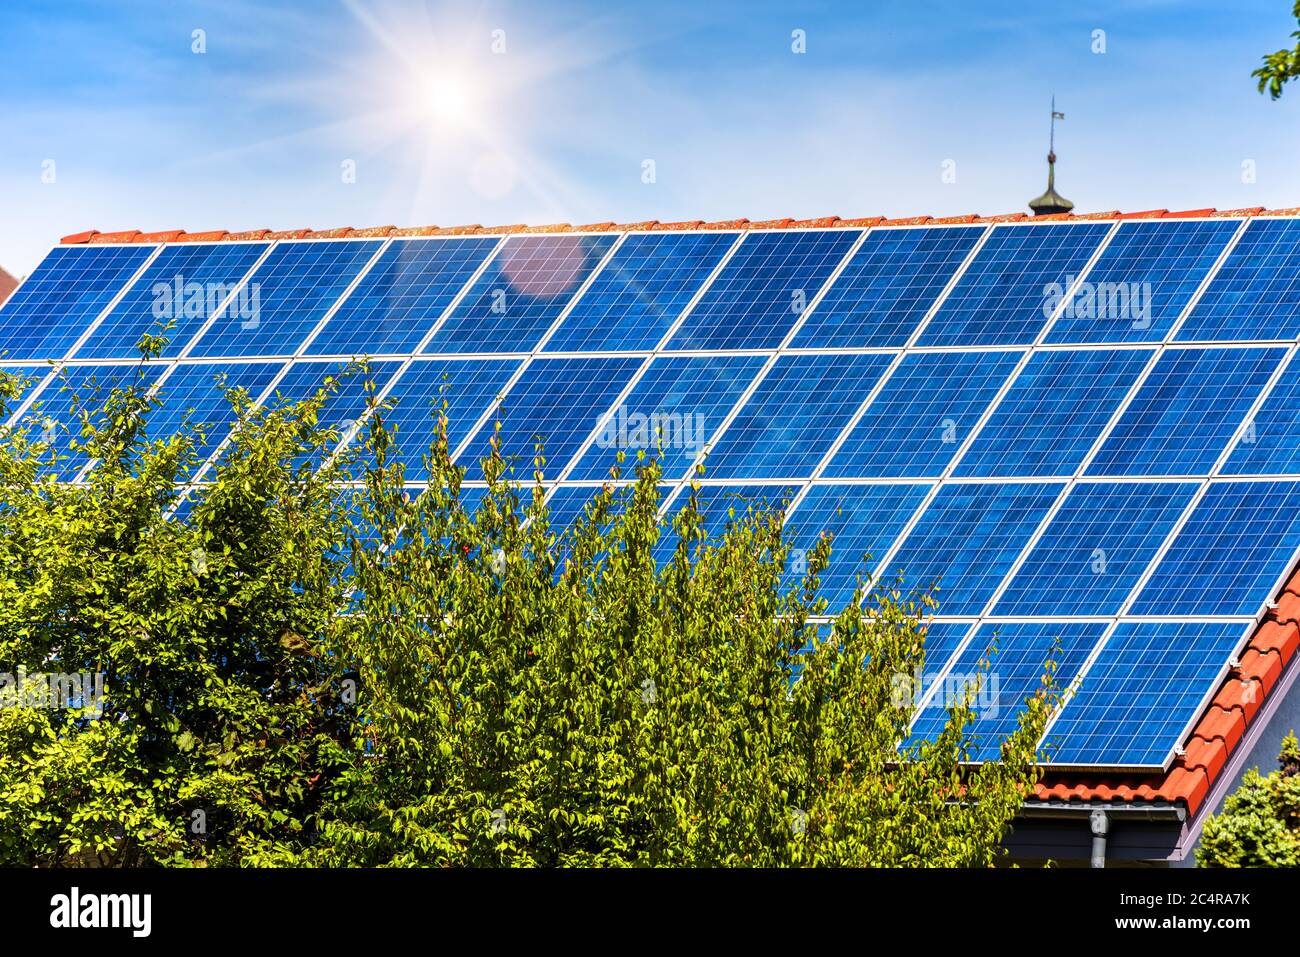 Solarpanel auf Wohnhausdach. Solaranlage auf Hausdach Nahaufnahme. Viele blaue Solarzellen auf dem Gebäudetisch für alternative Energie. Photovoltaik Stockfoto